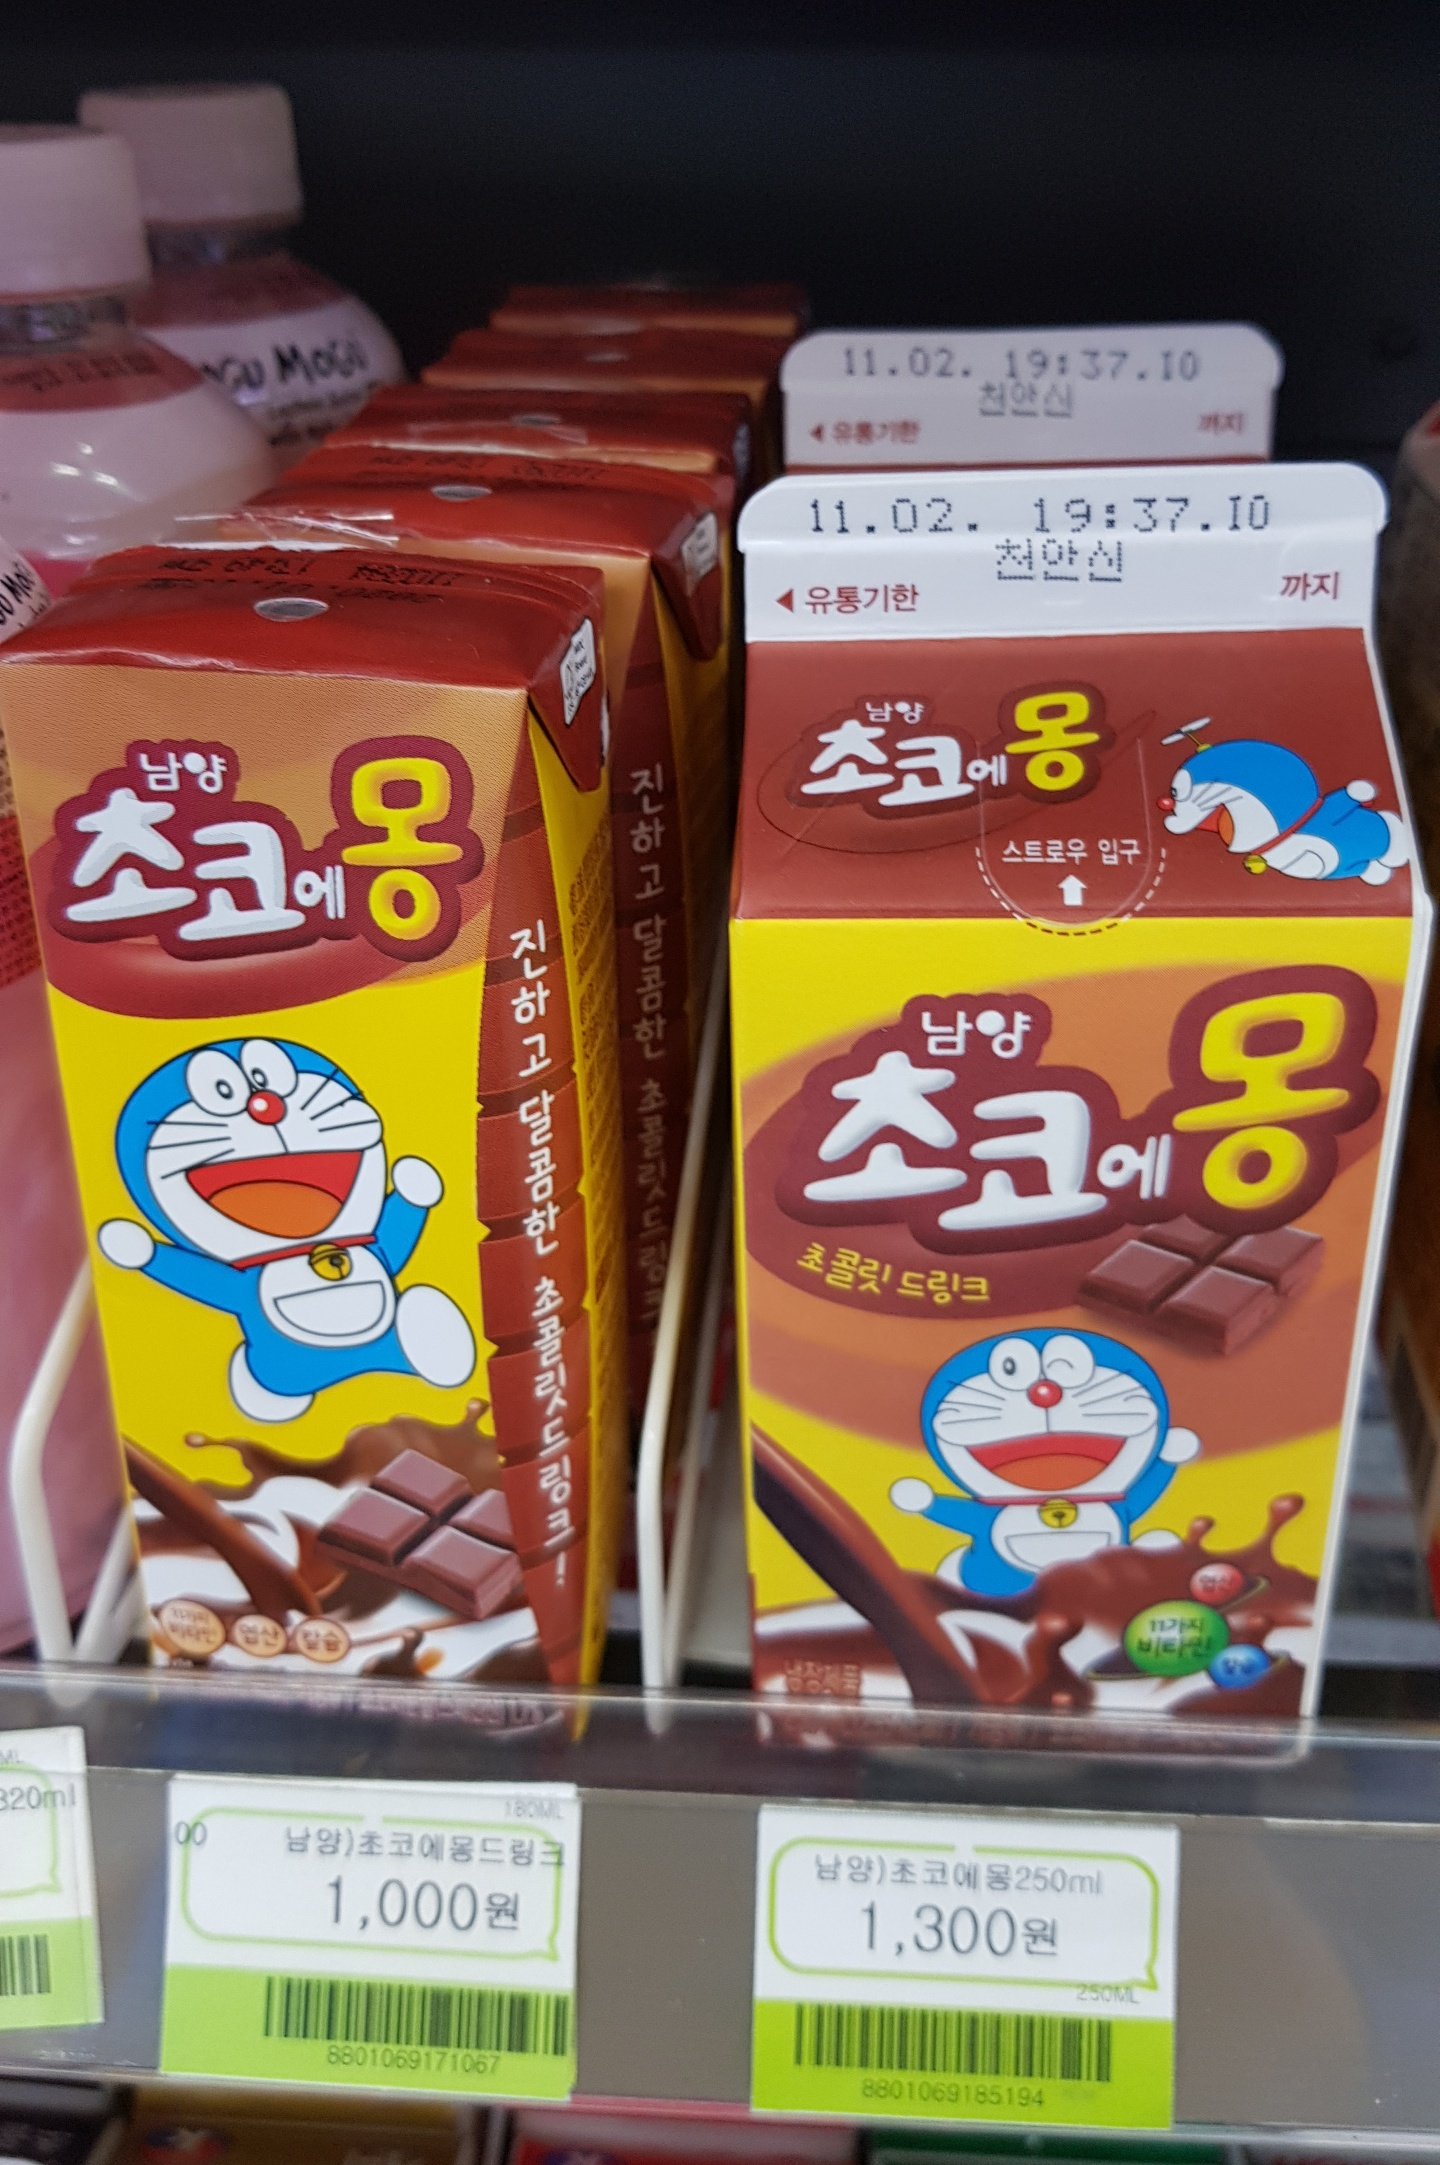 ハンサムhansaem 韓国のドラえもんチョコミルク T Co Piladlzkvm Twitter